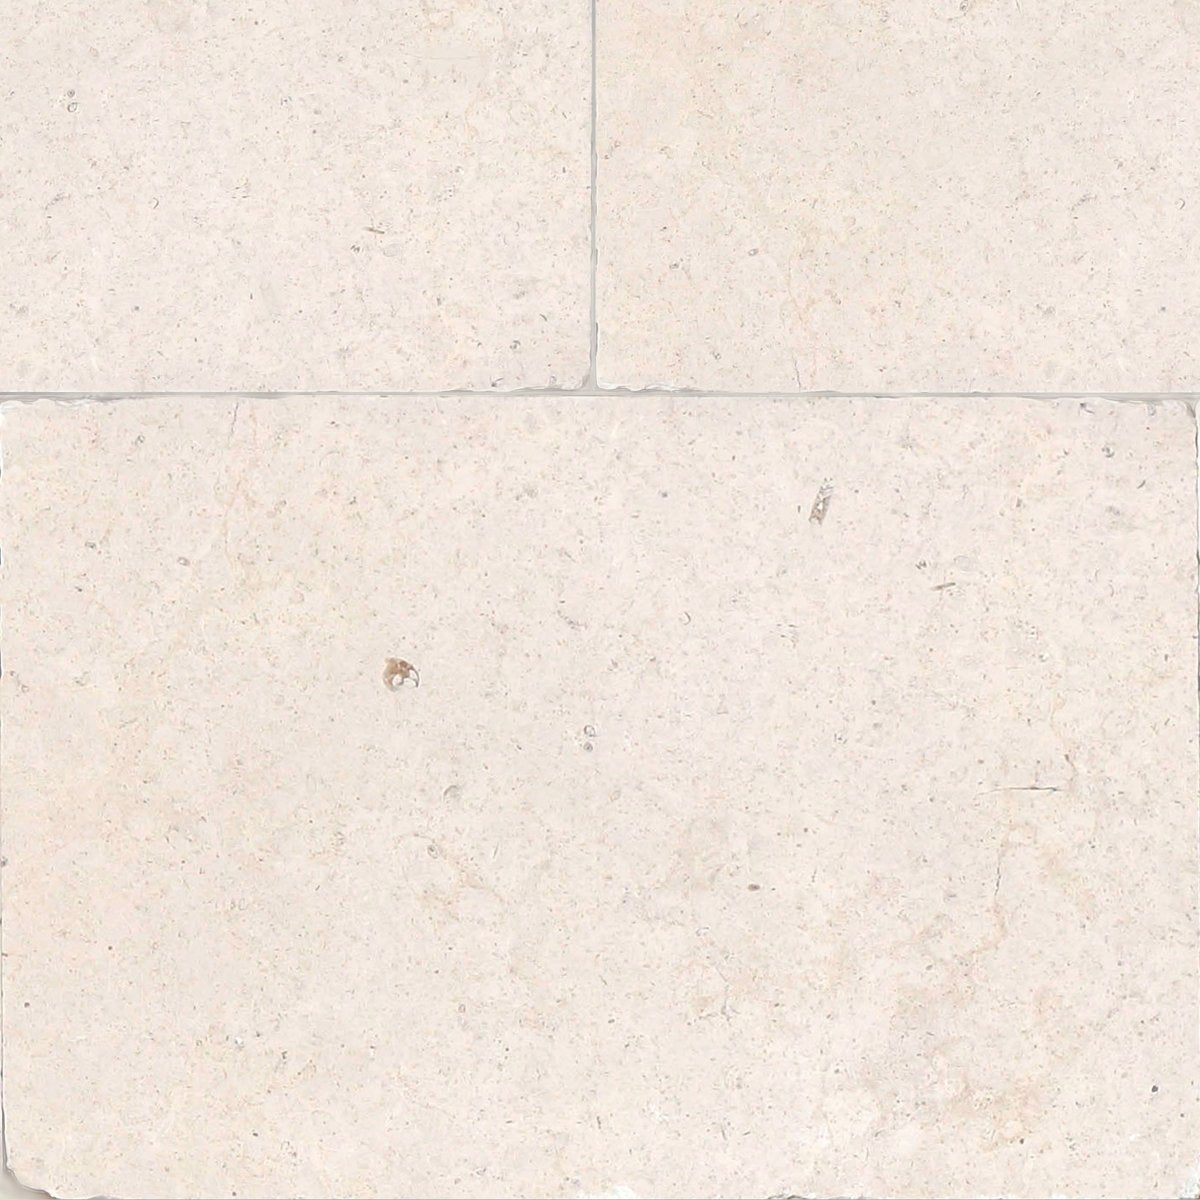 Palazzo Blond Belgian Brushed Limestone Field Tile 16''x24''x3/4''